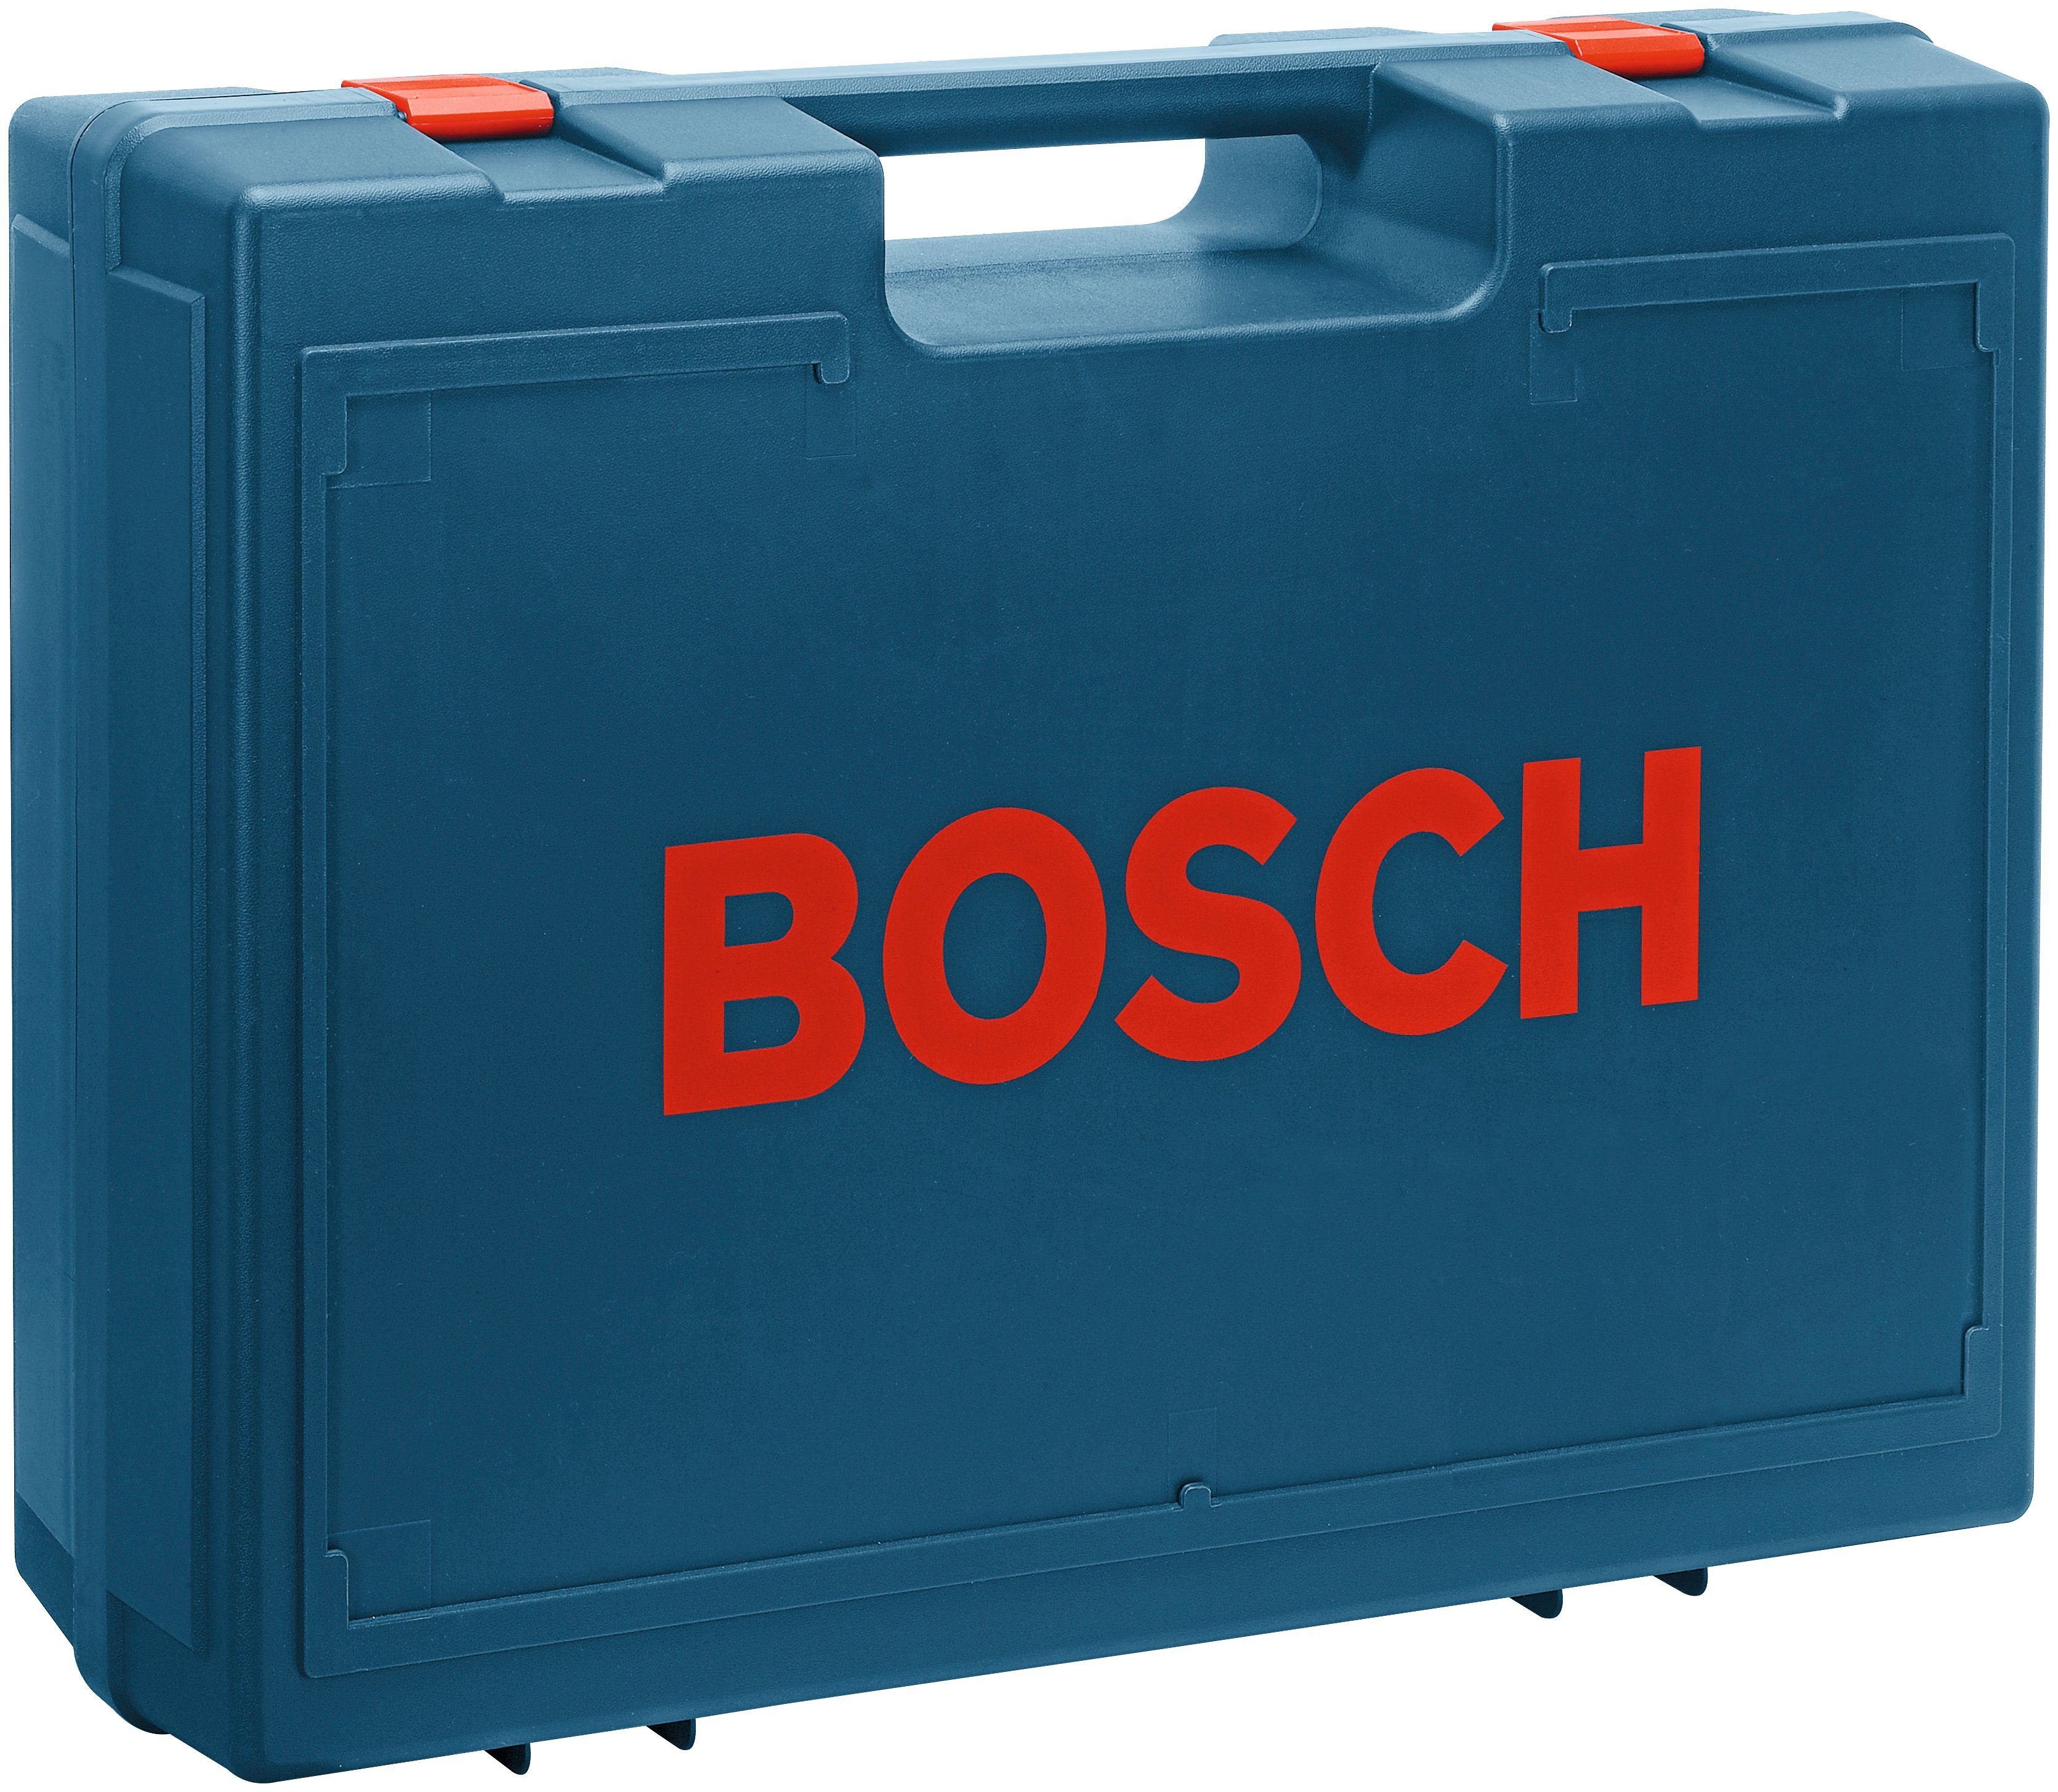 24000 U/min Exzenterschleifer AE, Bosch GEX 125-1 Professional